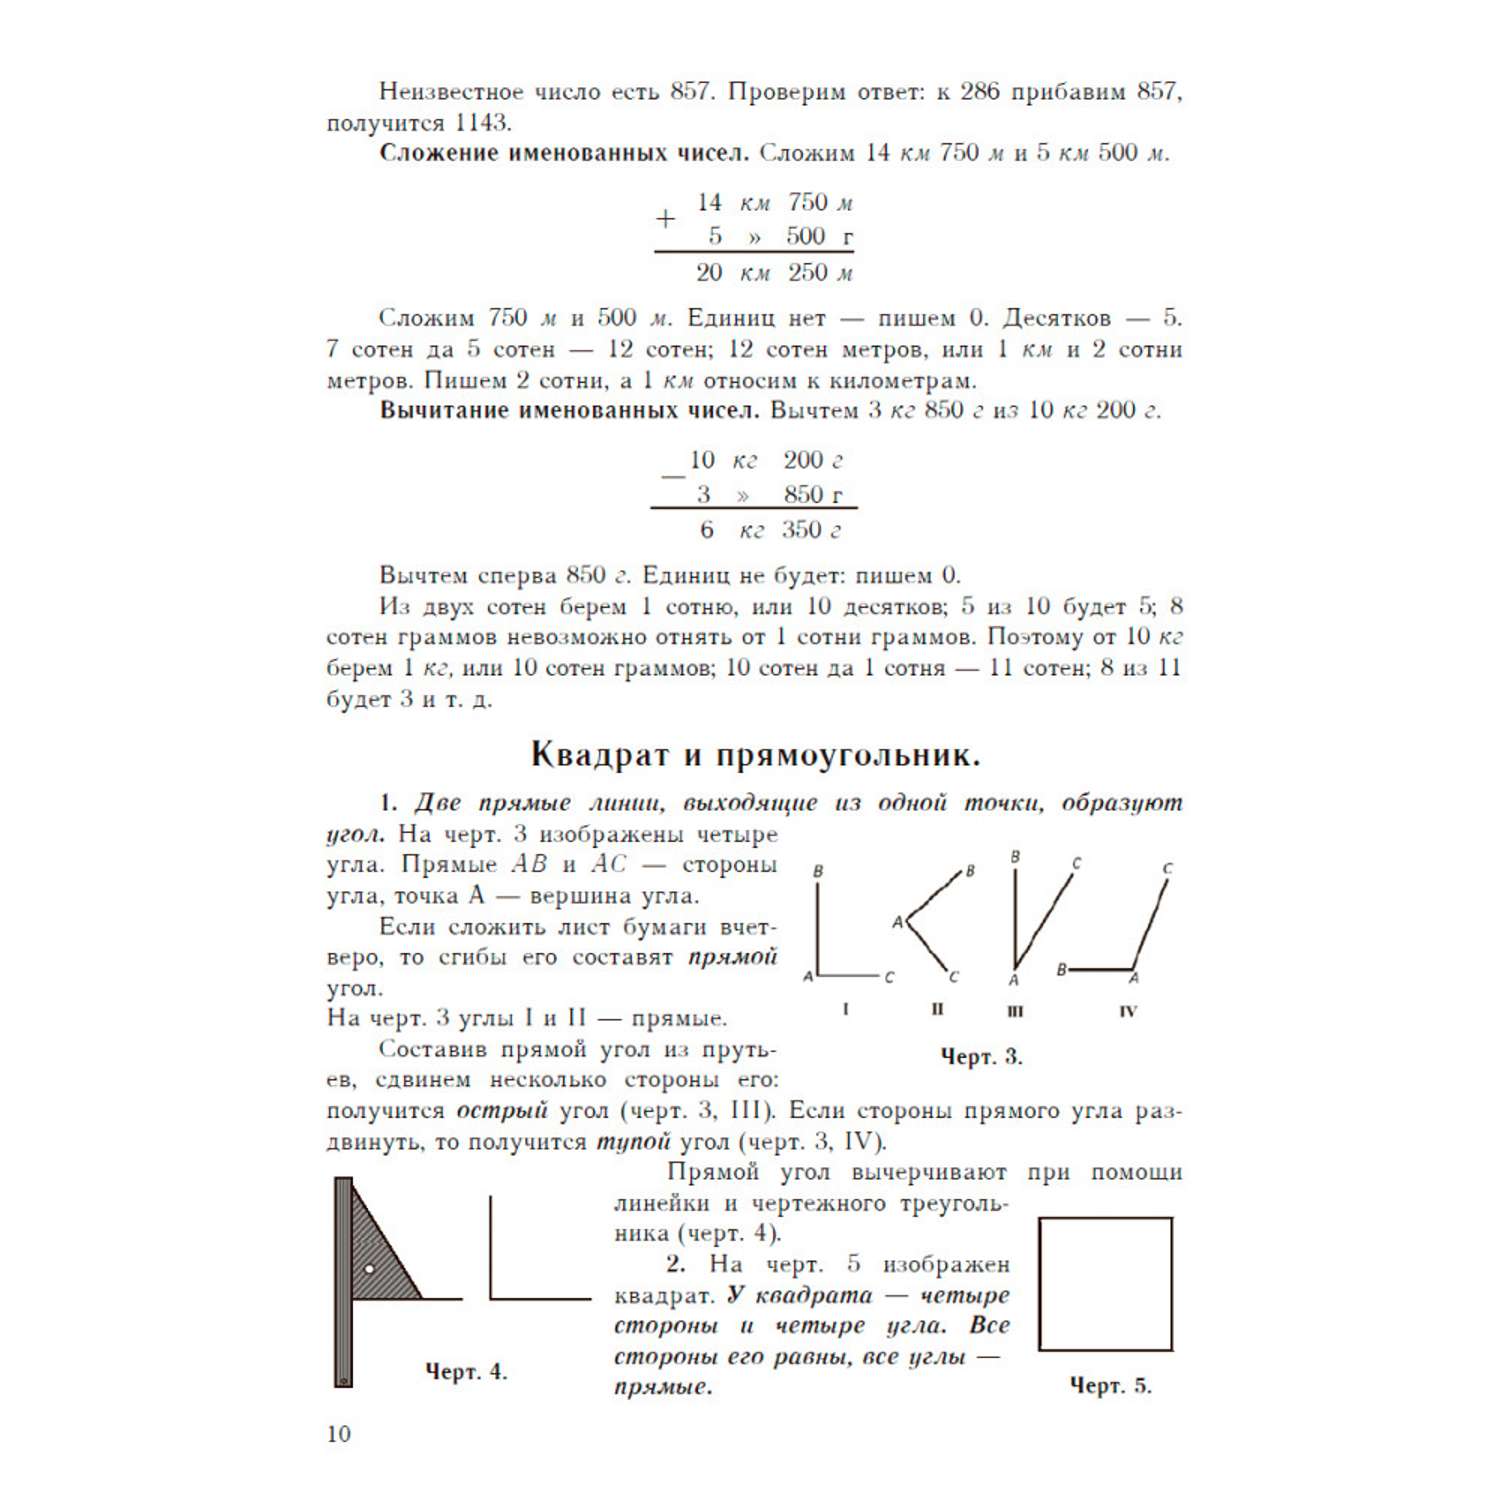 Книга Наше Завтра Учебник арифметики для начальной школы. Часть III. 1937 год - фото 5